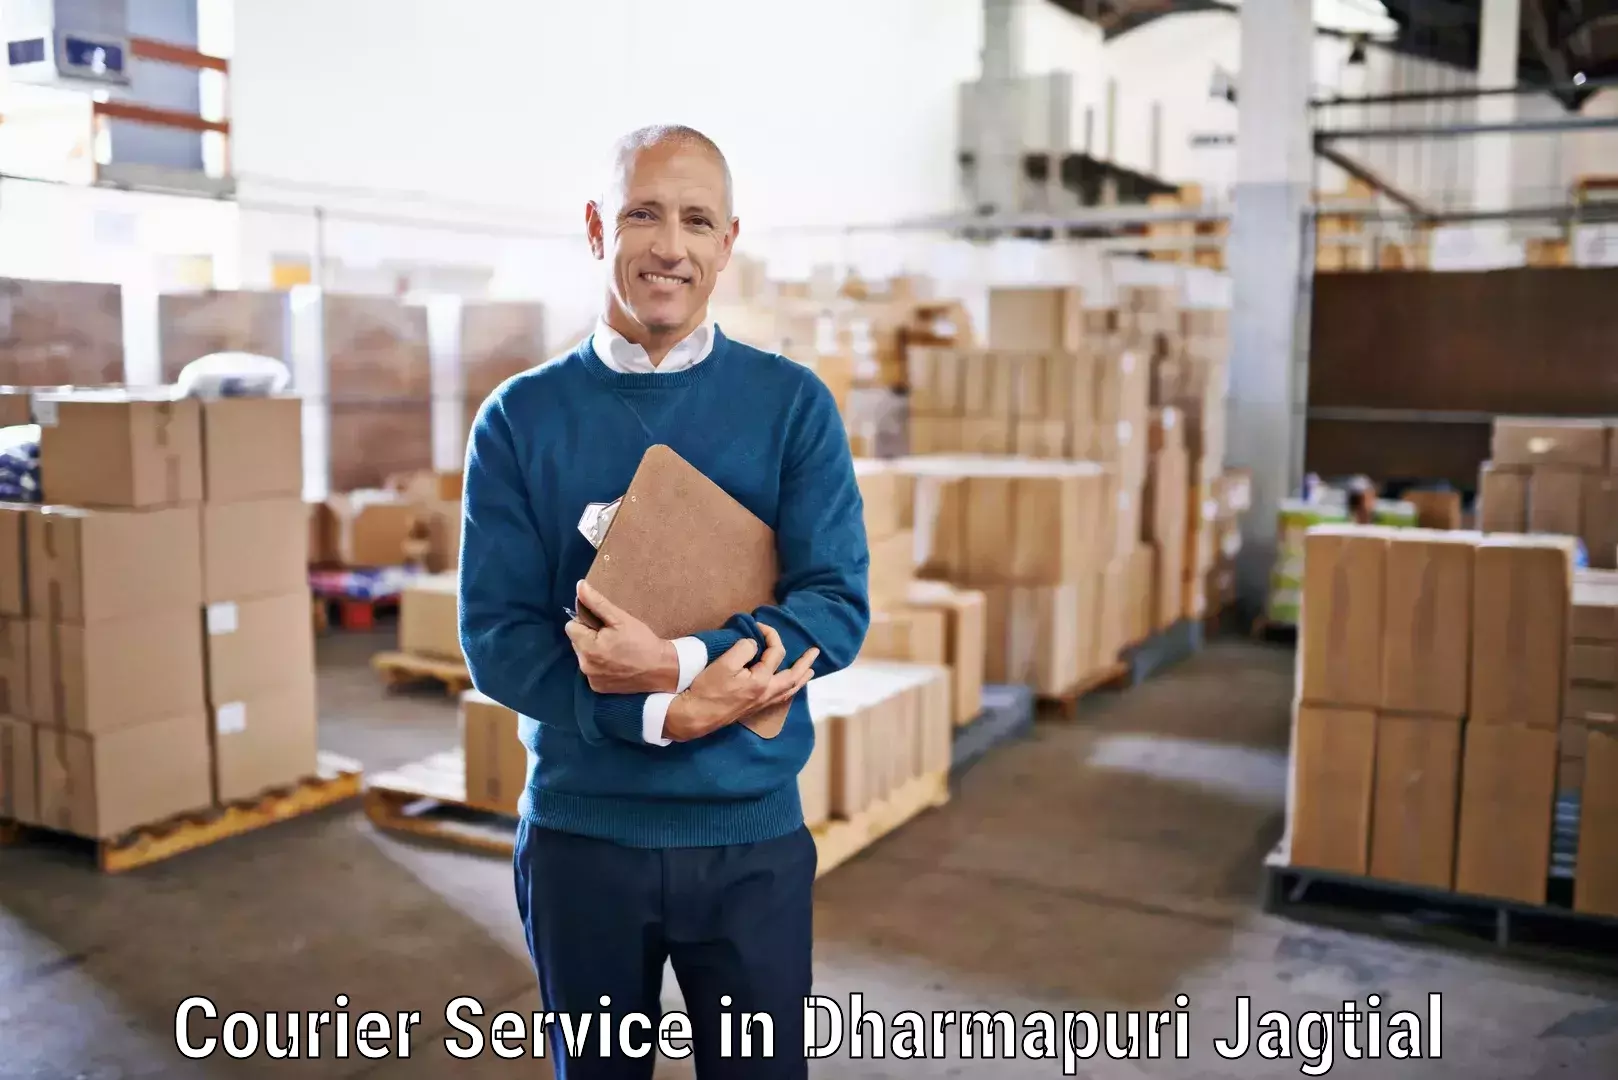 Rapid freight solutions in Dharmapuri Jagtial